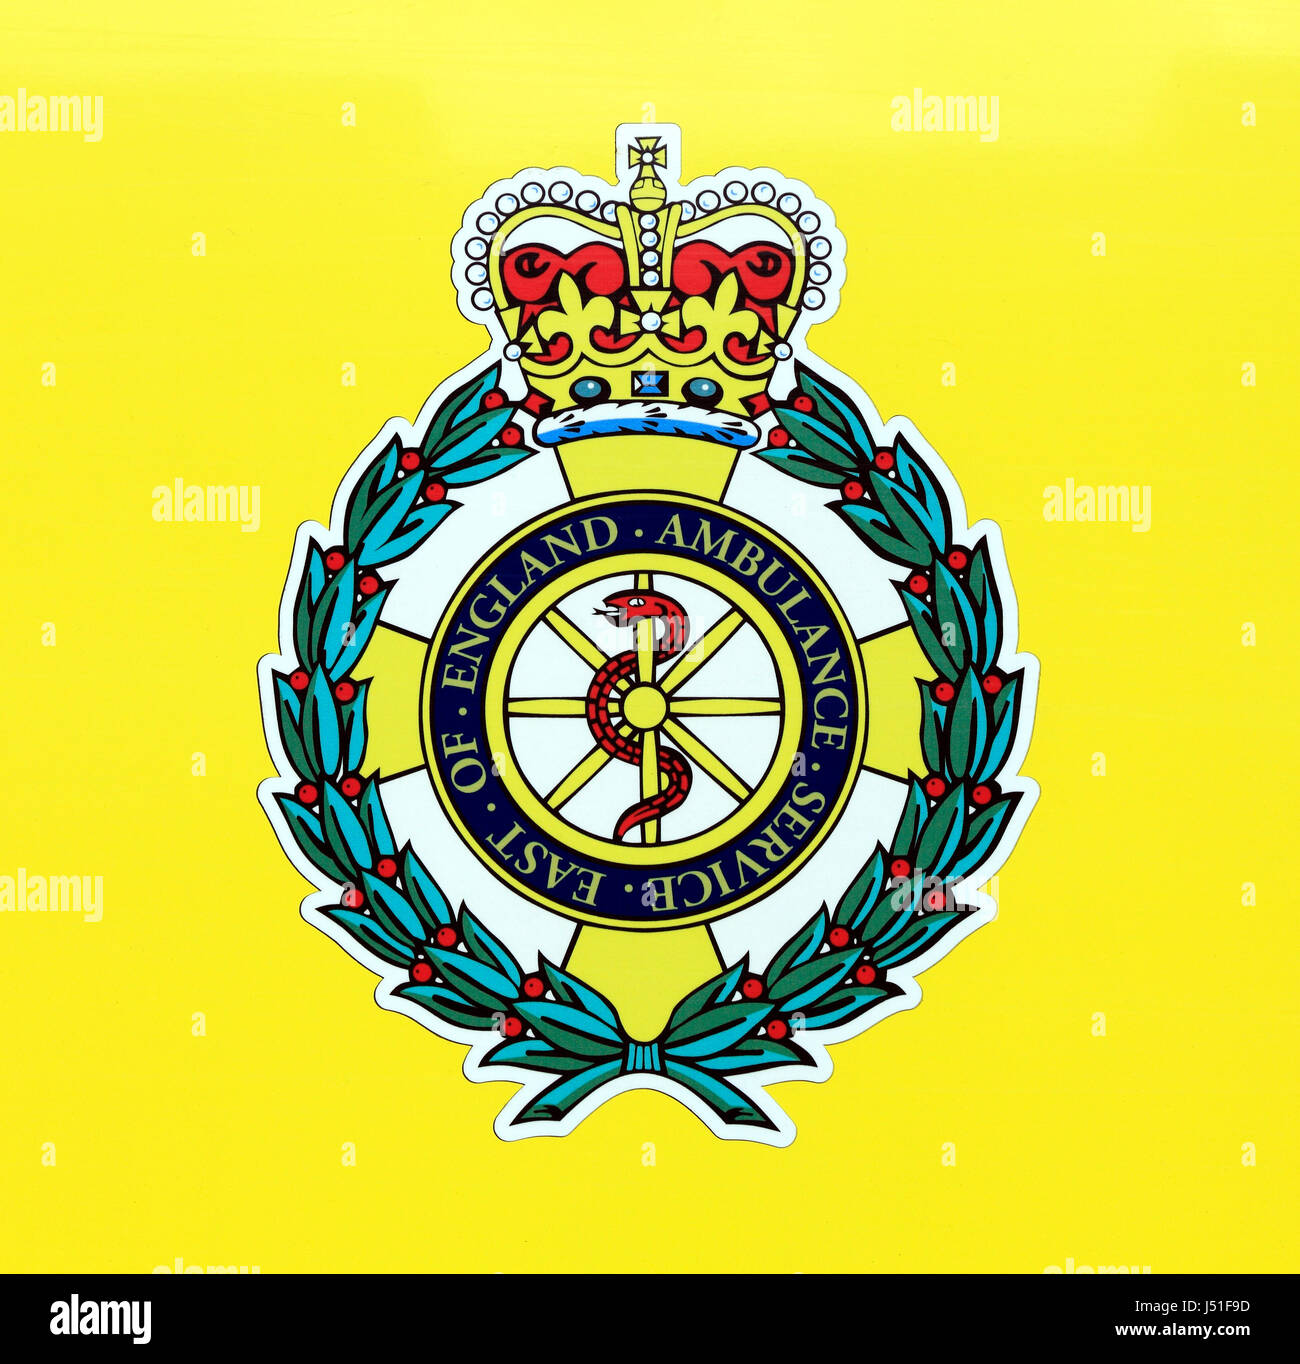 Est dell' Inghilterra servizio ambulanza, Logo, Norfolk, Inghilterra, Regno Unito, consulta araldica, badge, NHS servizi medici Foto Stock